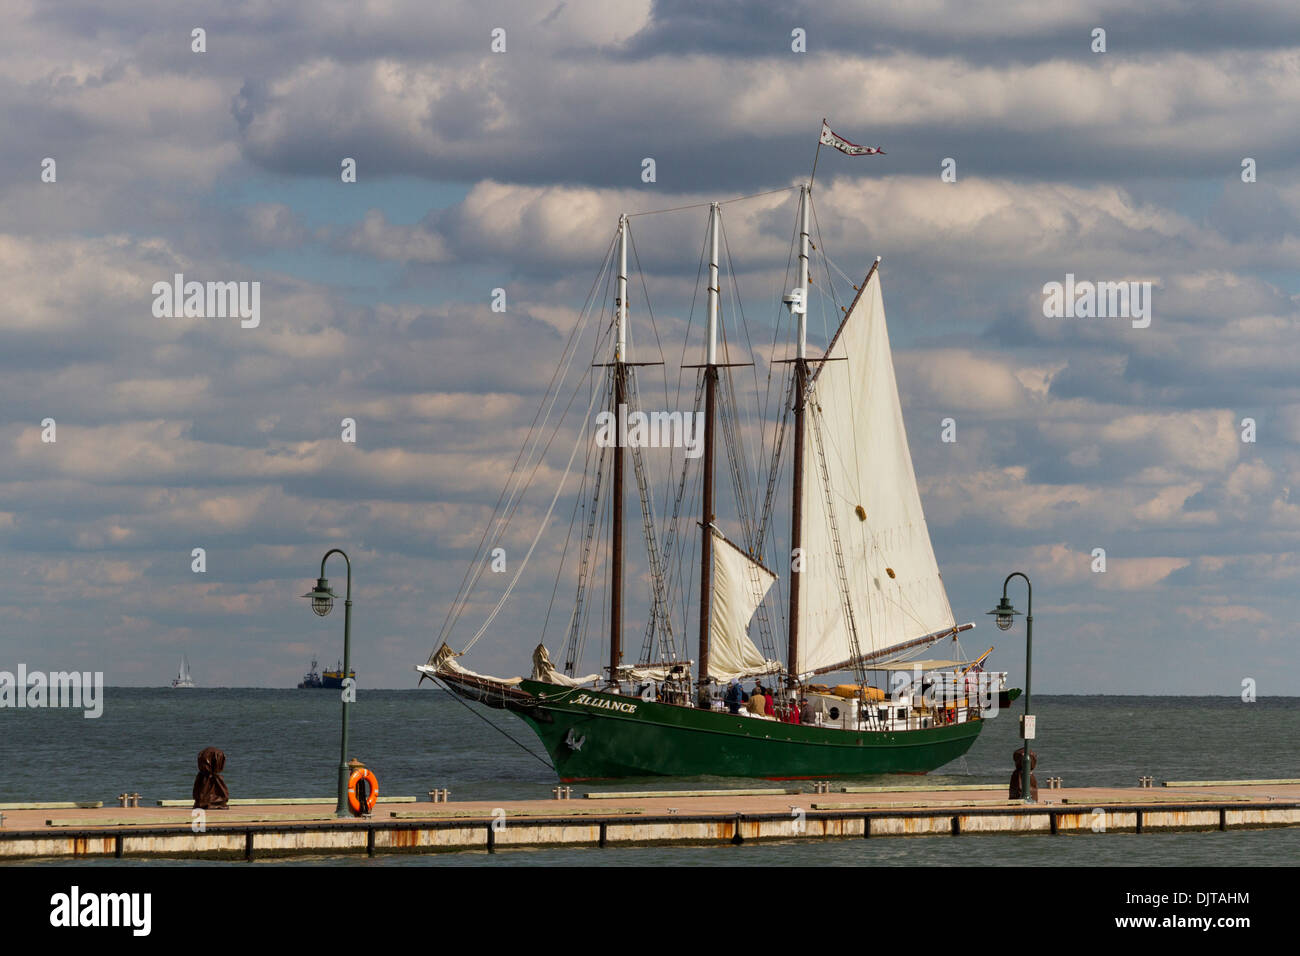 Tall Ship Schooner, Alliance, segelt auf dem York River im historischen Yorktown im Colonial National Historical Park in Virginia. Stockfoto